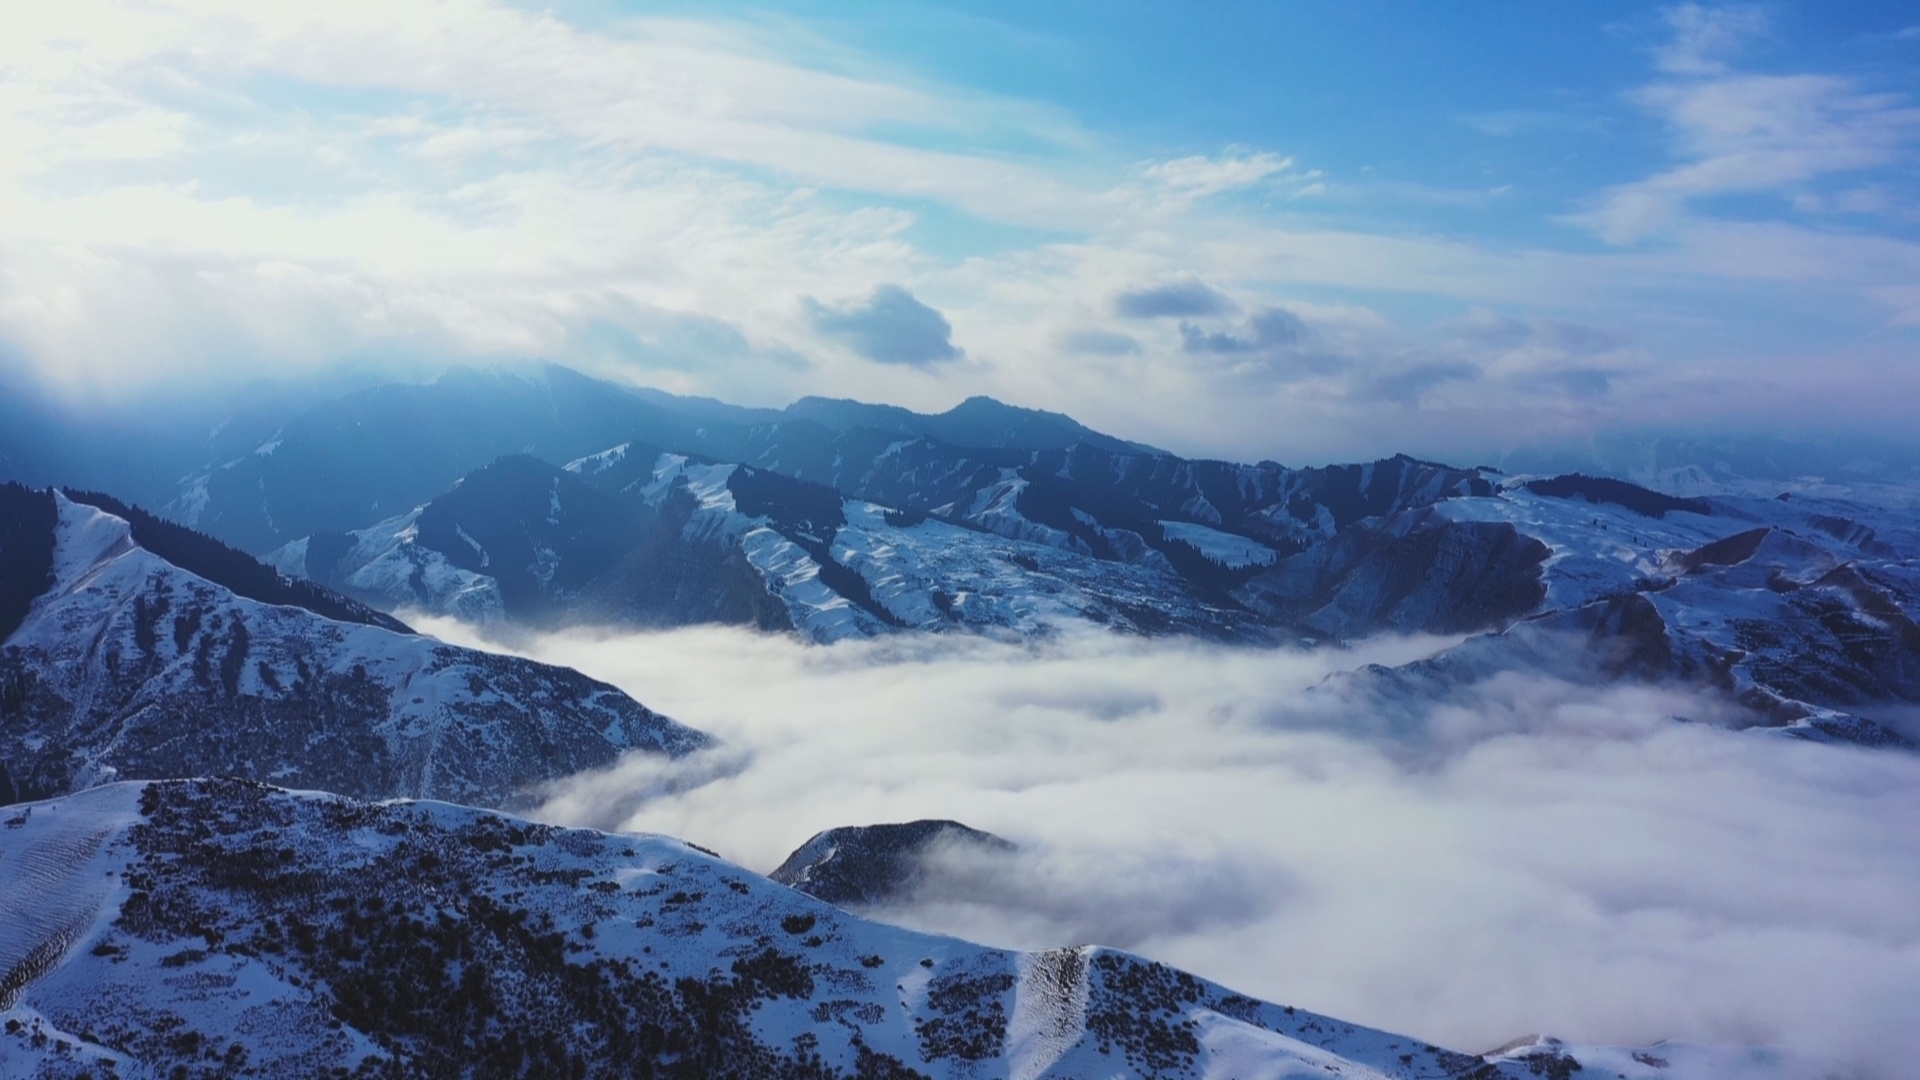 自然风景素材设计黑白风格摄影作品山峰高耸入云在薄雾中若隐若现宛若仙境